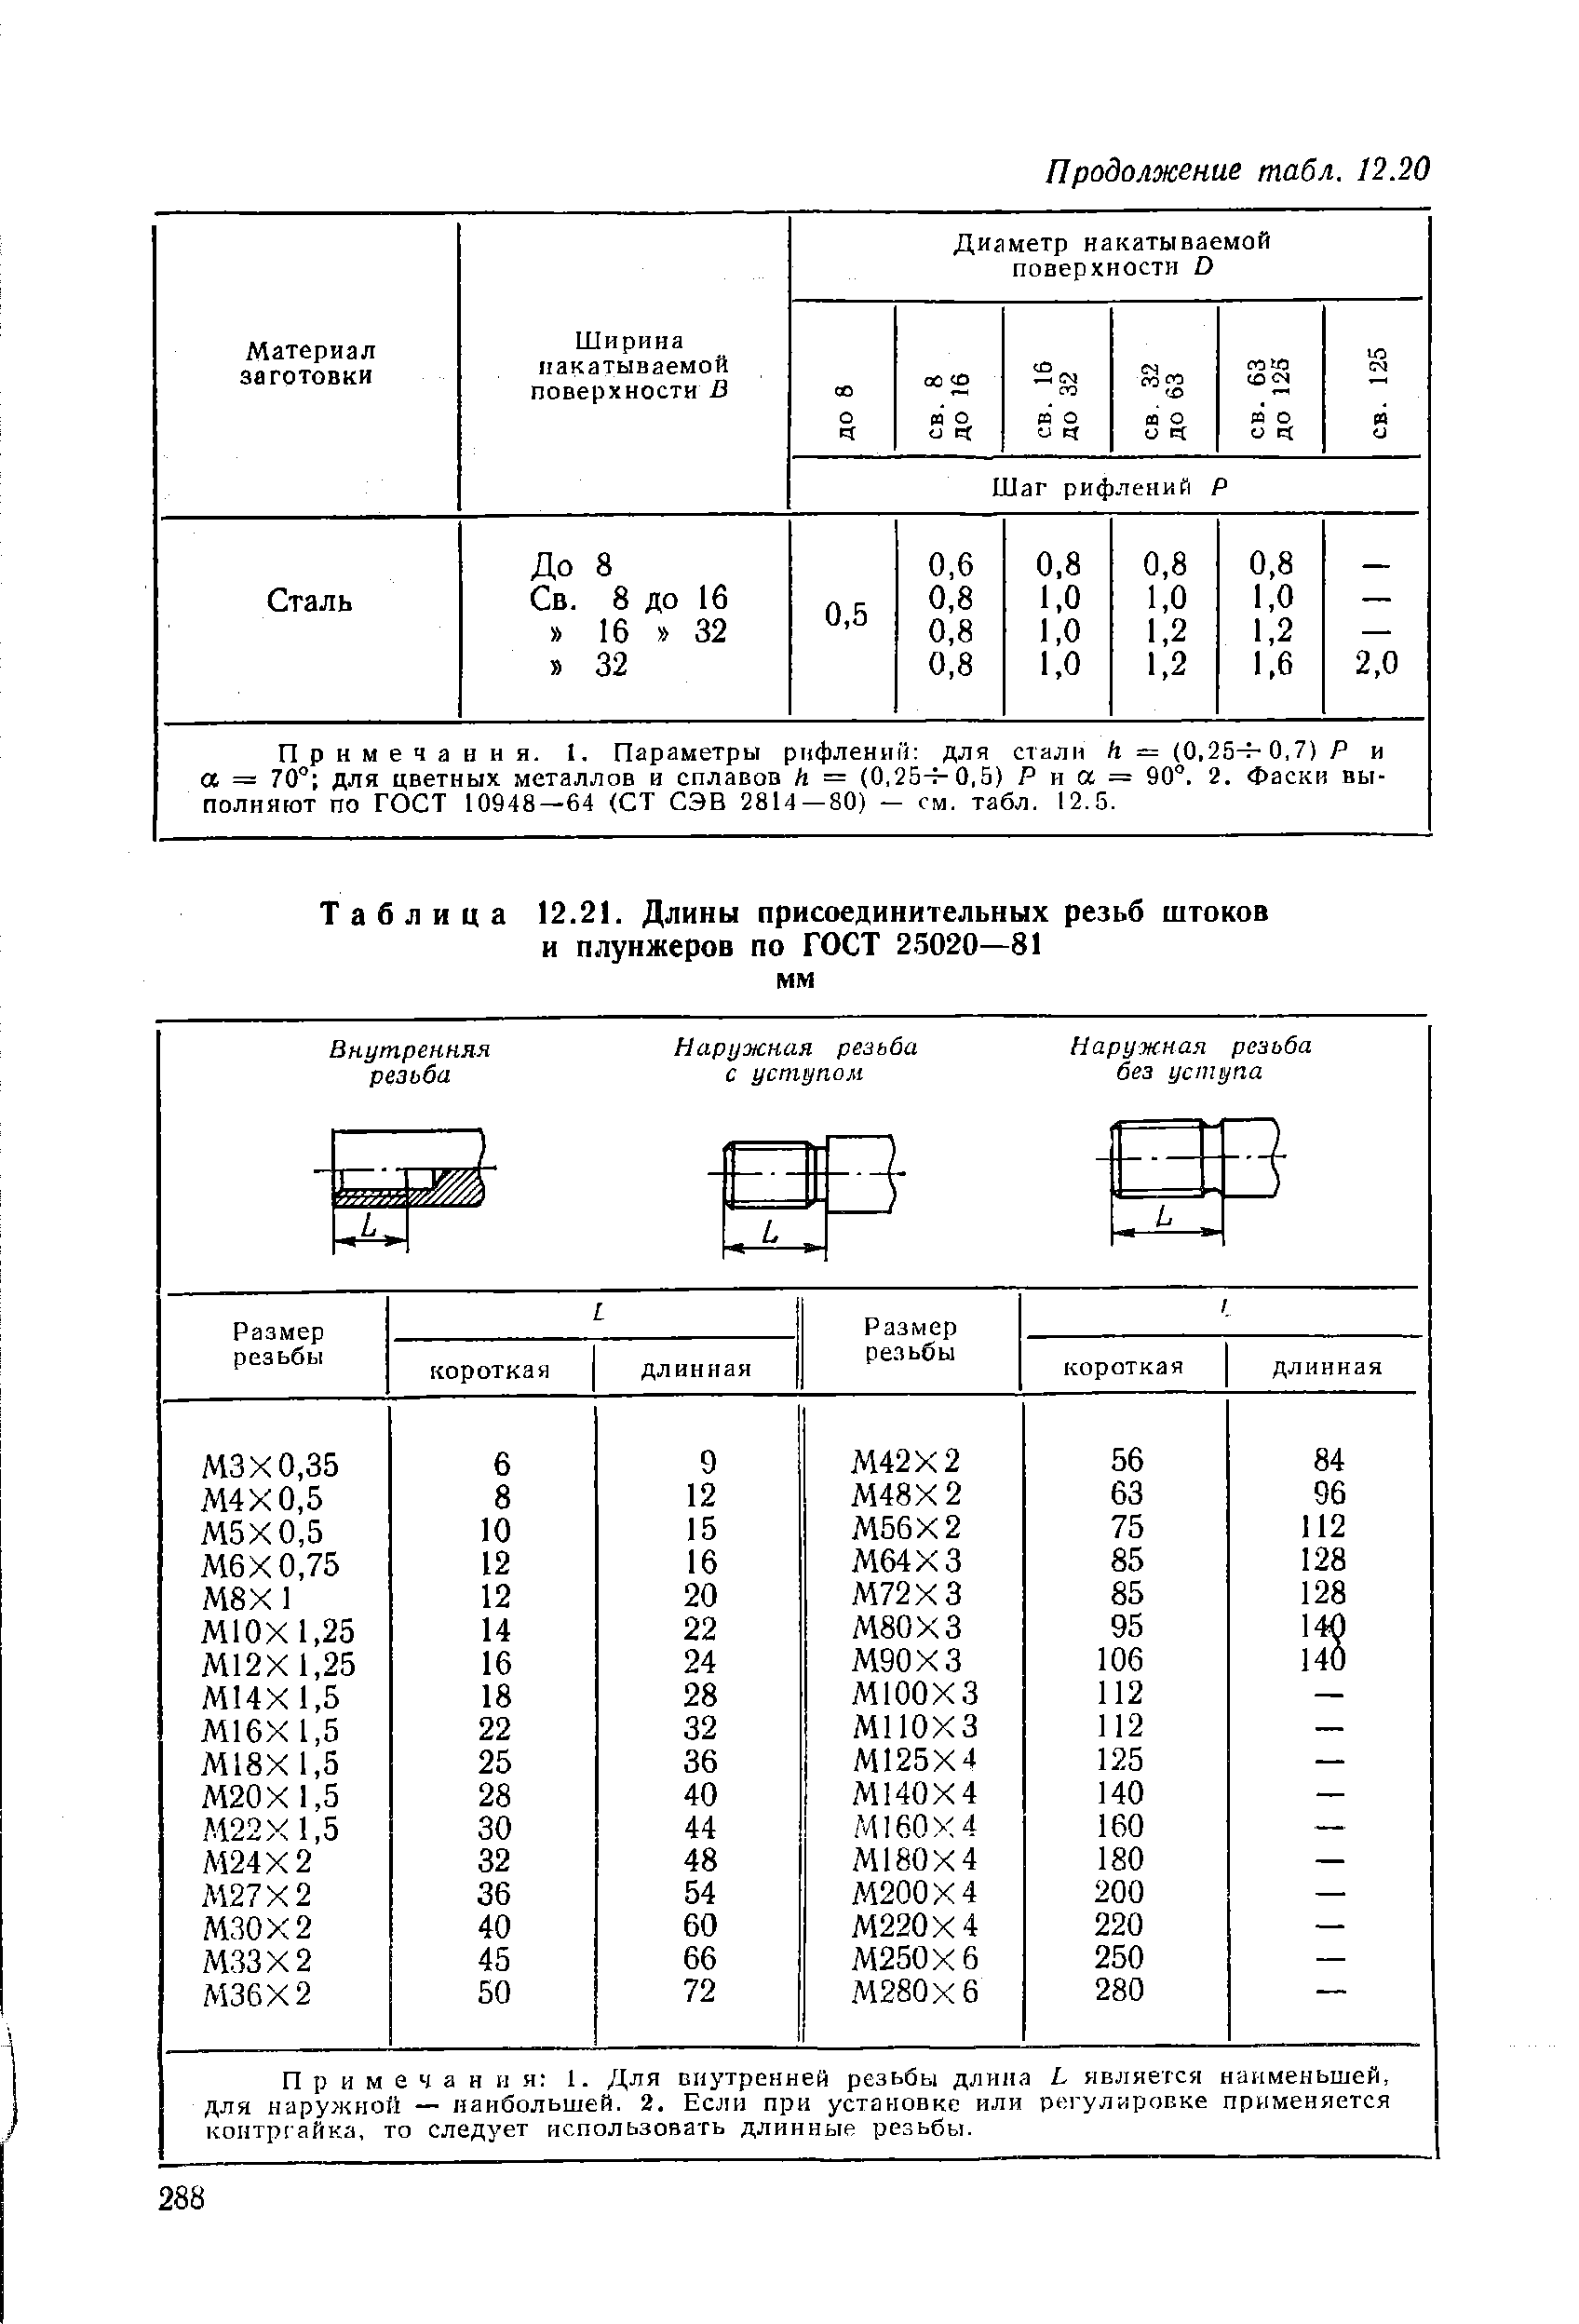 Таблица 12.21. Длины присоединительных резьб штоков и плунжеров по ГОСТ 25020—81 мм
